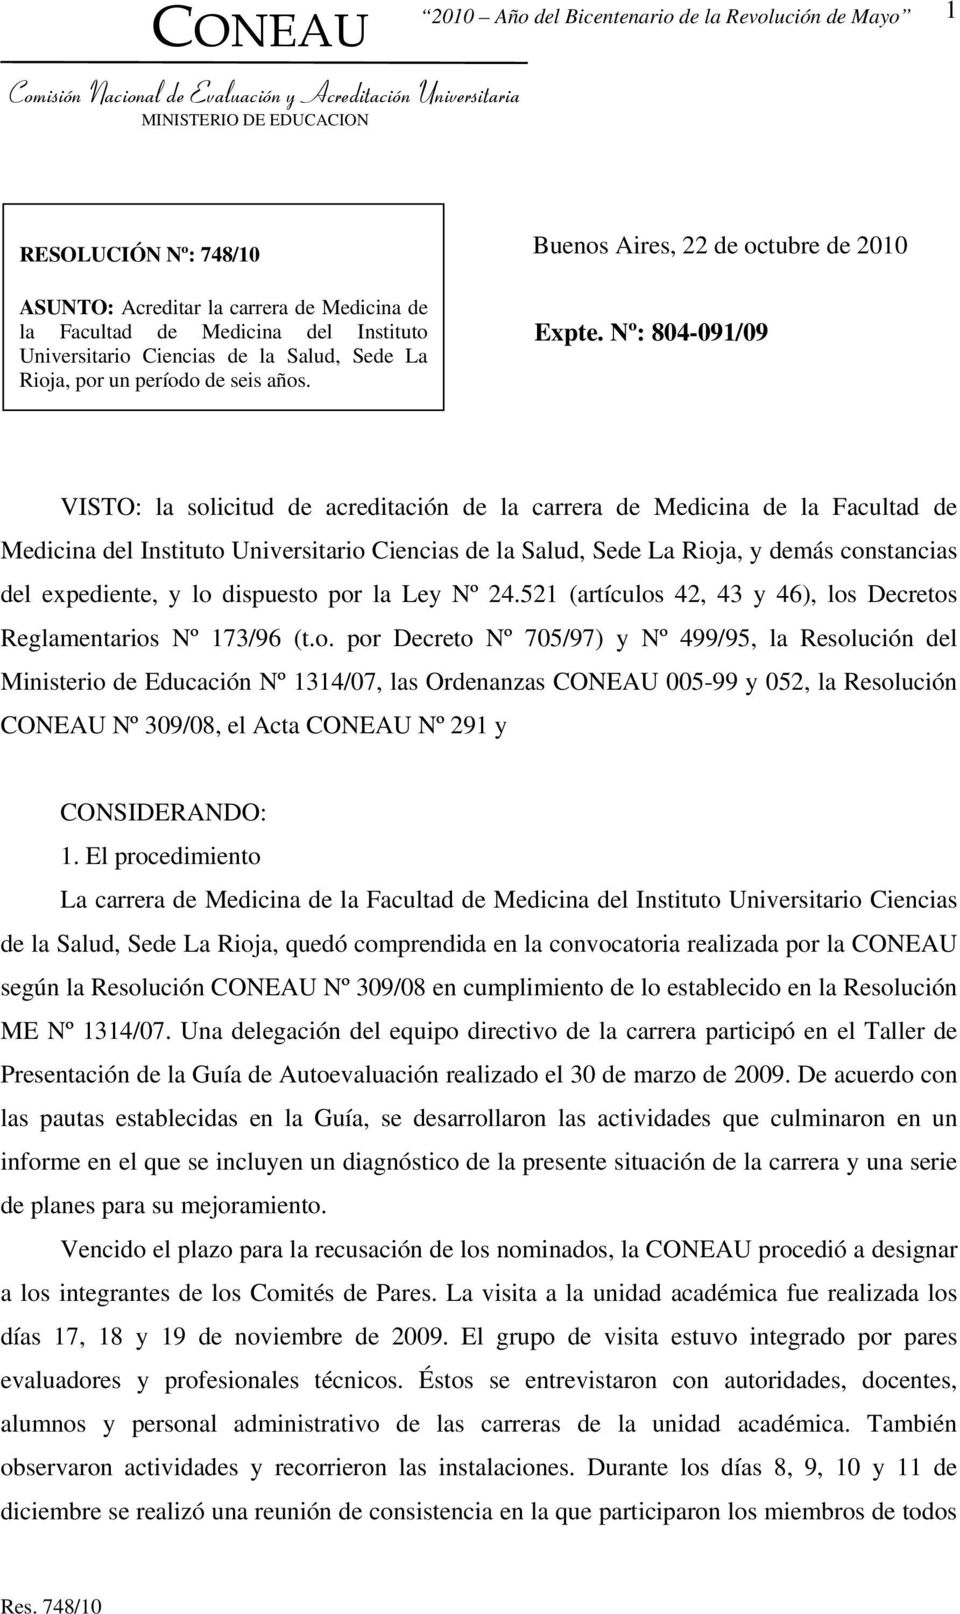 Nº: 804-091/09 VISTO: la solicitud de acreditación de la carrera de Medicina de la Facultad de Medicina del Instituto Universitario Ciencias de la Salud, Sede La Rioja, y demás constancias del